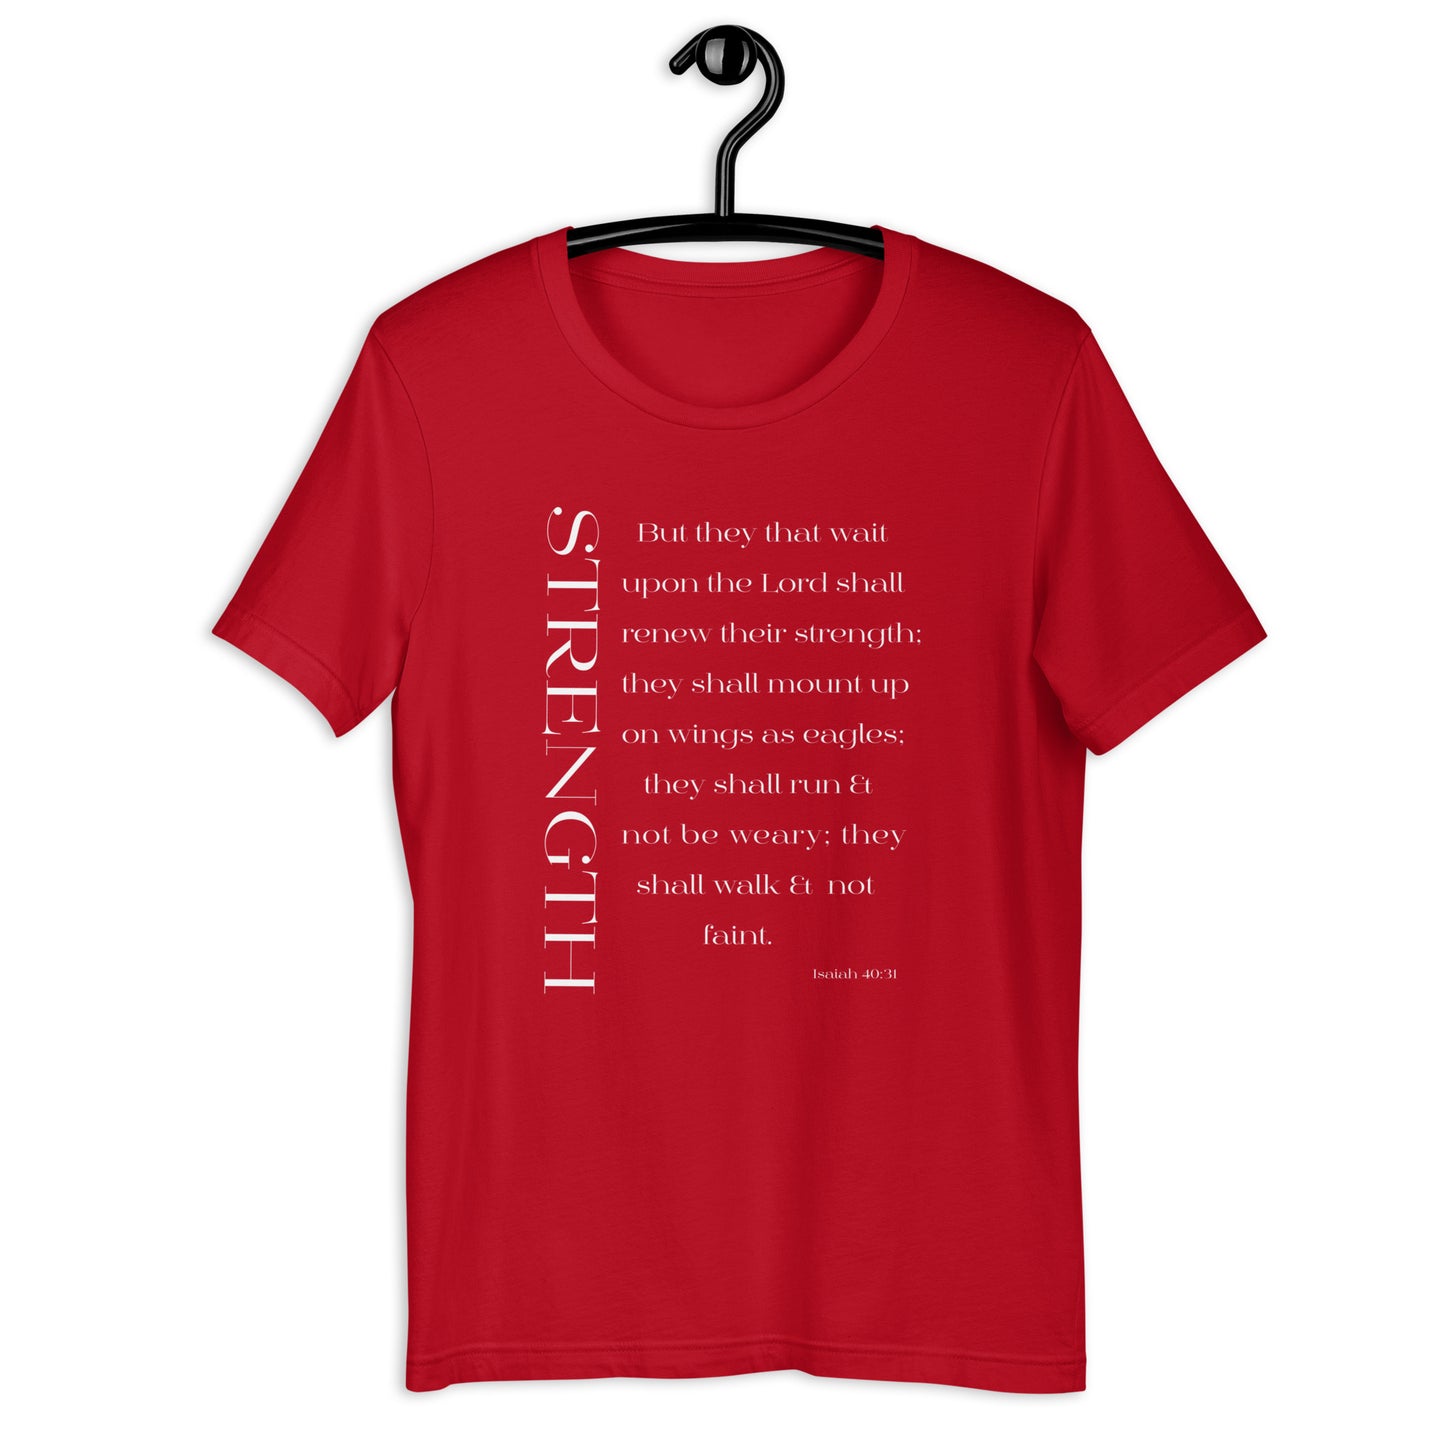 Isaiah 40:31 Strength Short-Sleeve Unisex T-Shirt red on hanger